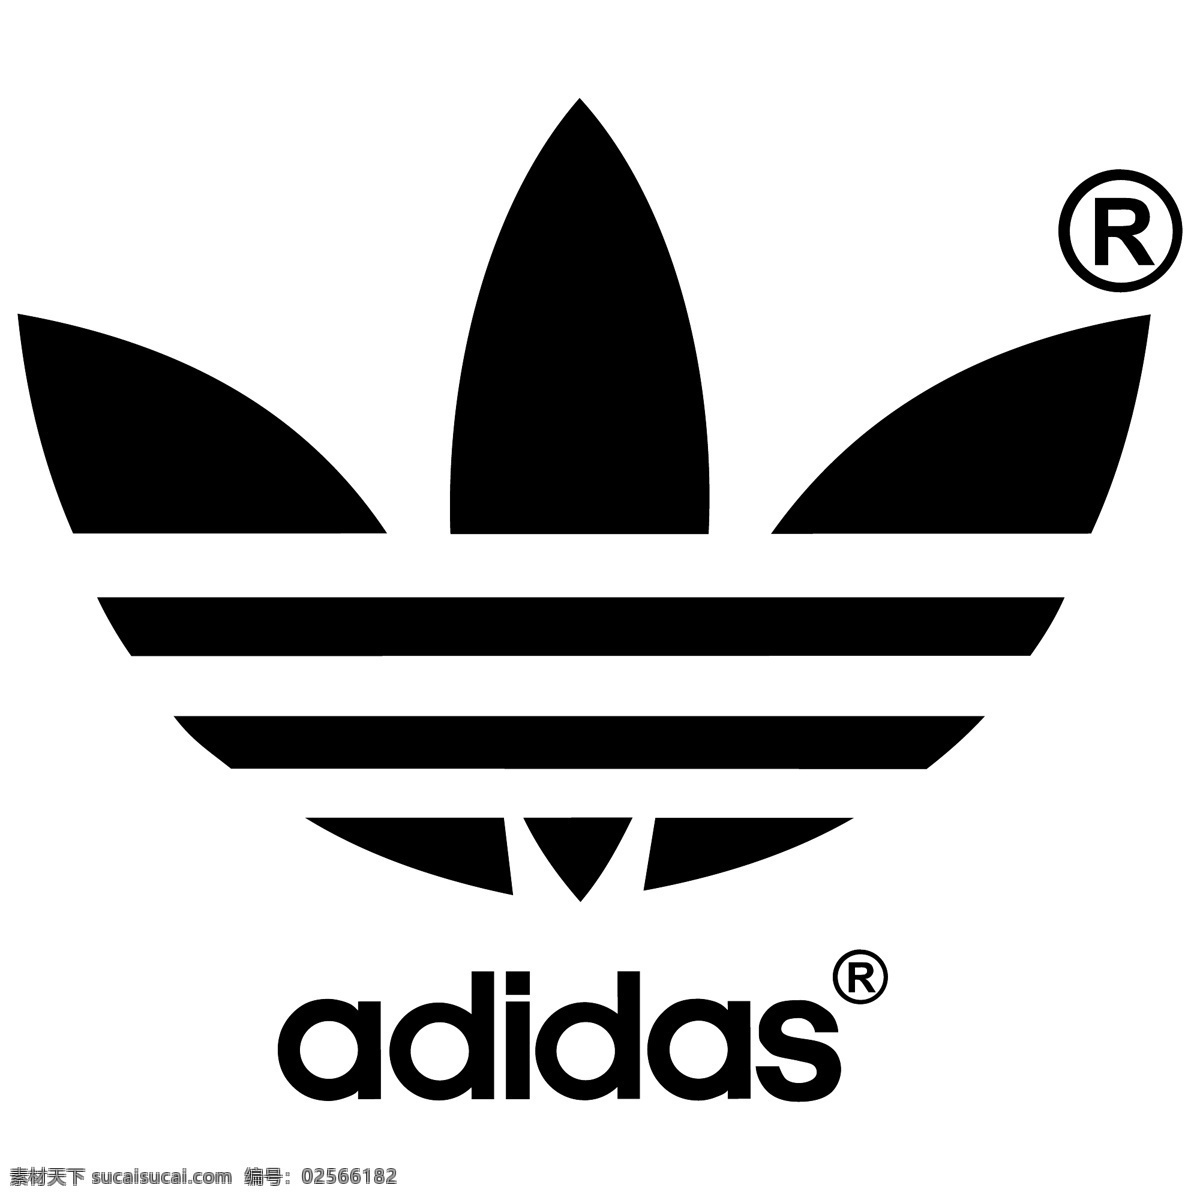 阿迪达斯 logo adidas adidaslogo 阿迪达斯图案 阿迪达斯标志 标志图标 公共标识标志